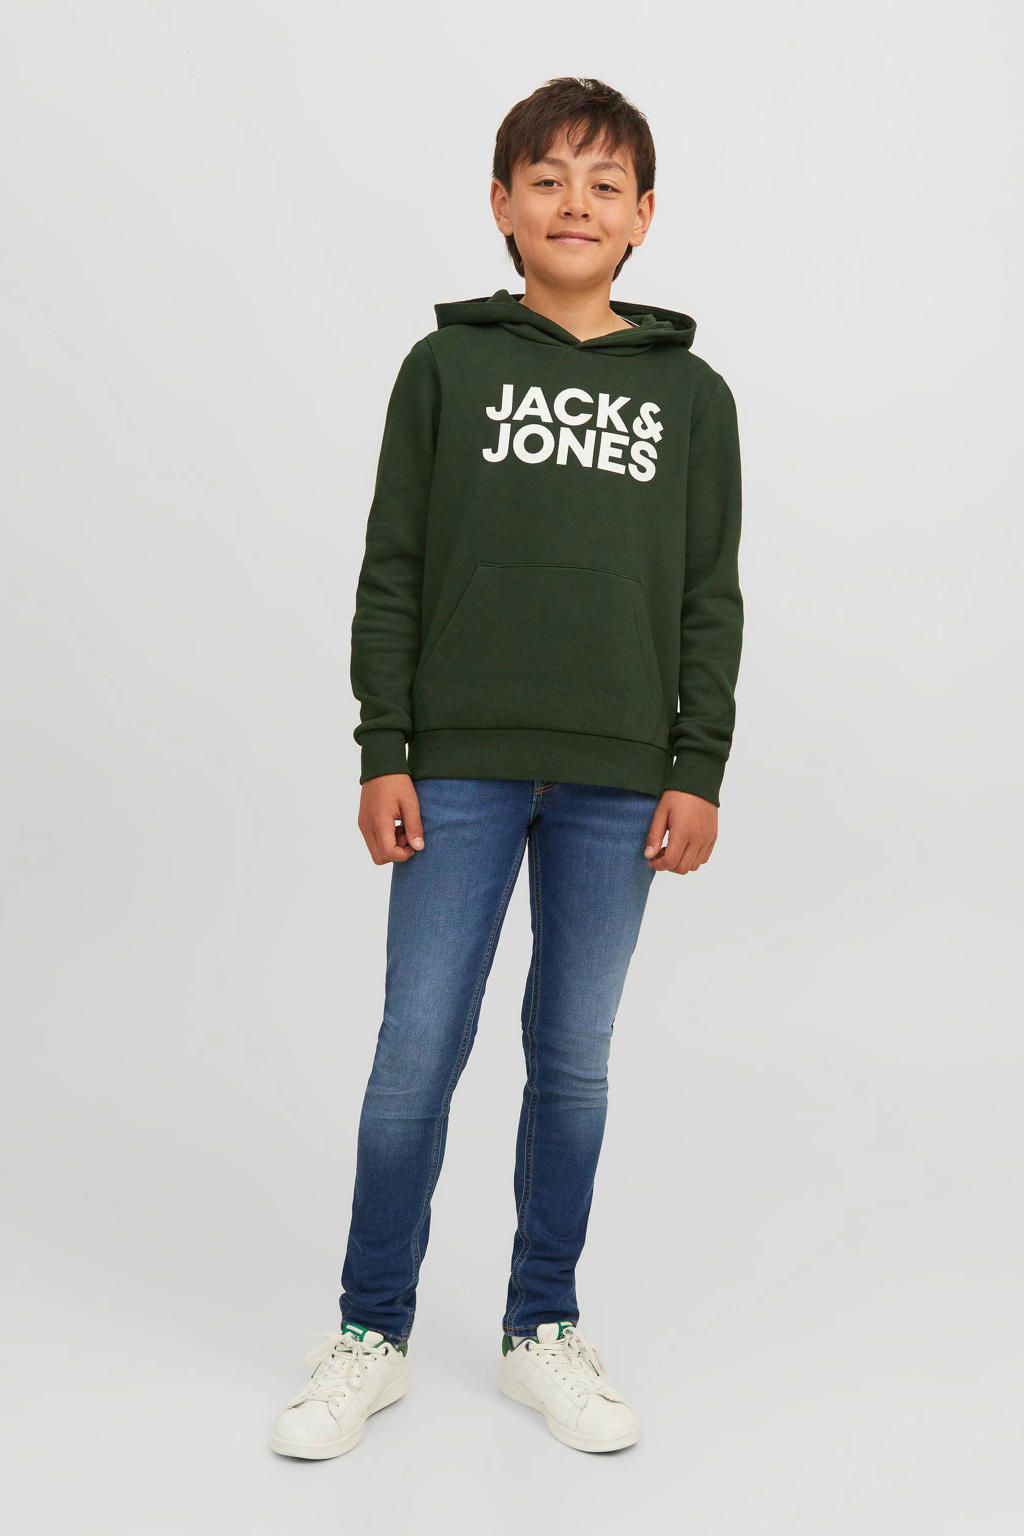 Groene jongens JACK & JONES JUNIOR hoodie van sweat materiaal met logo dessin, lange mouwen en capuchon